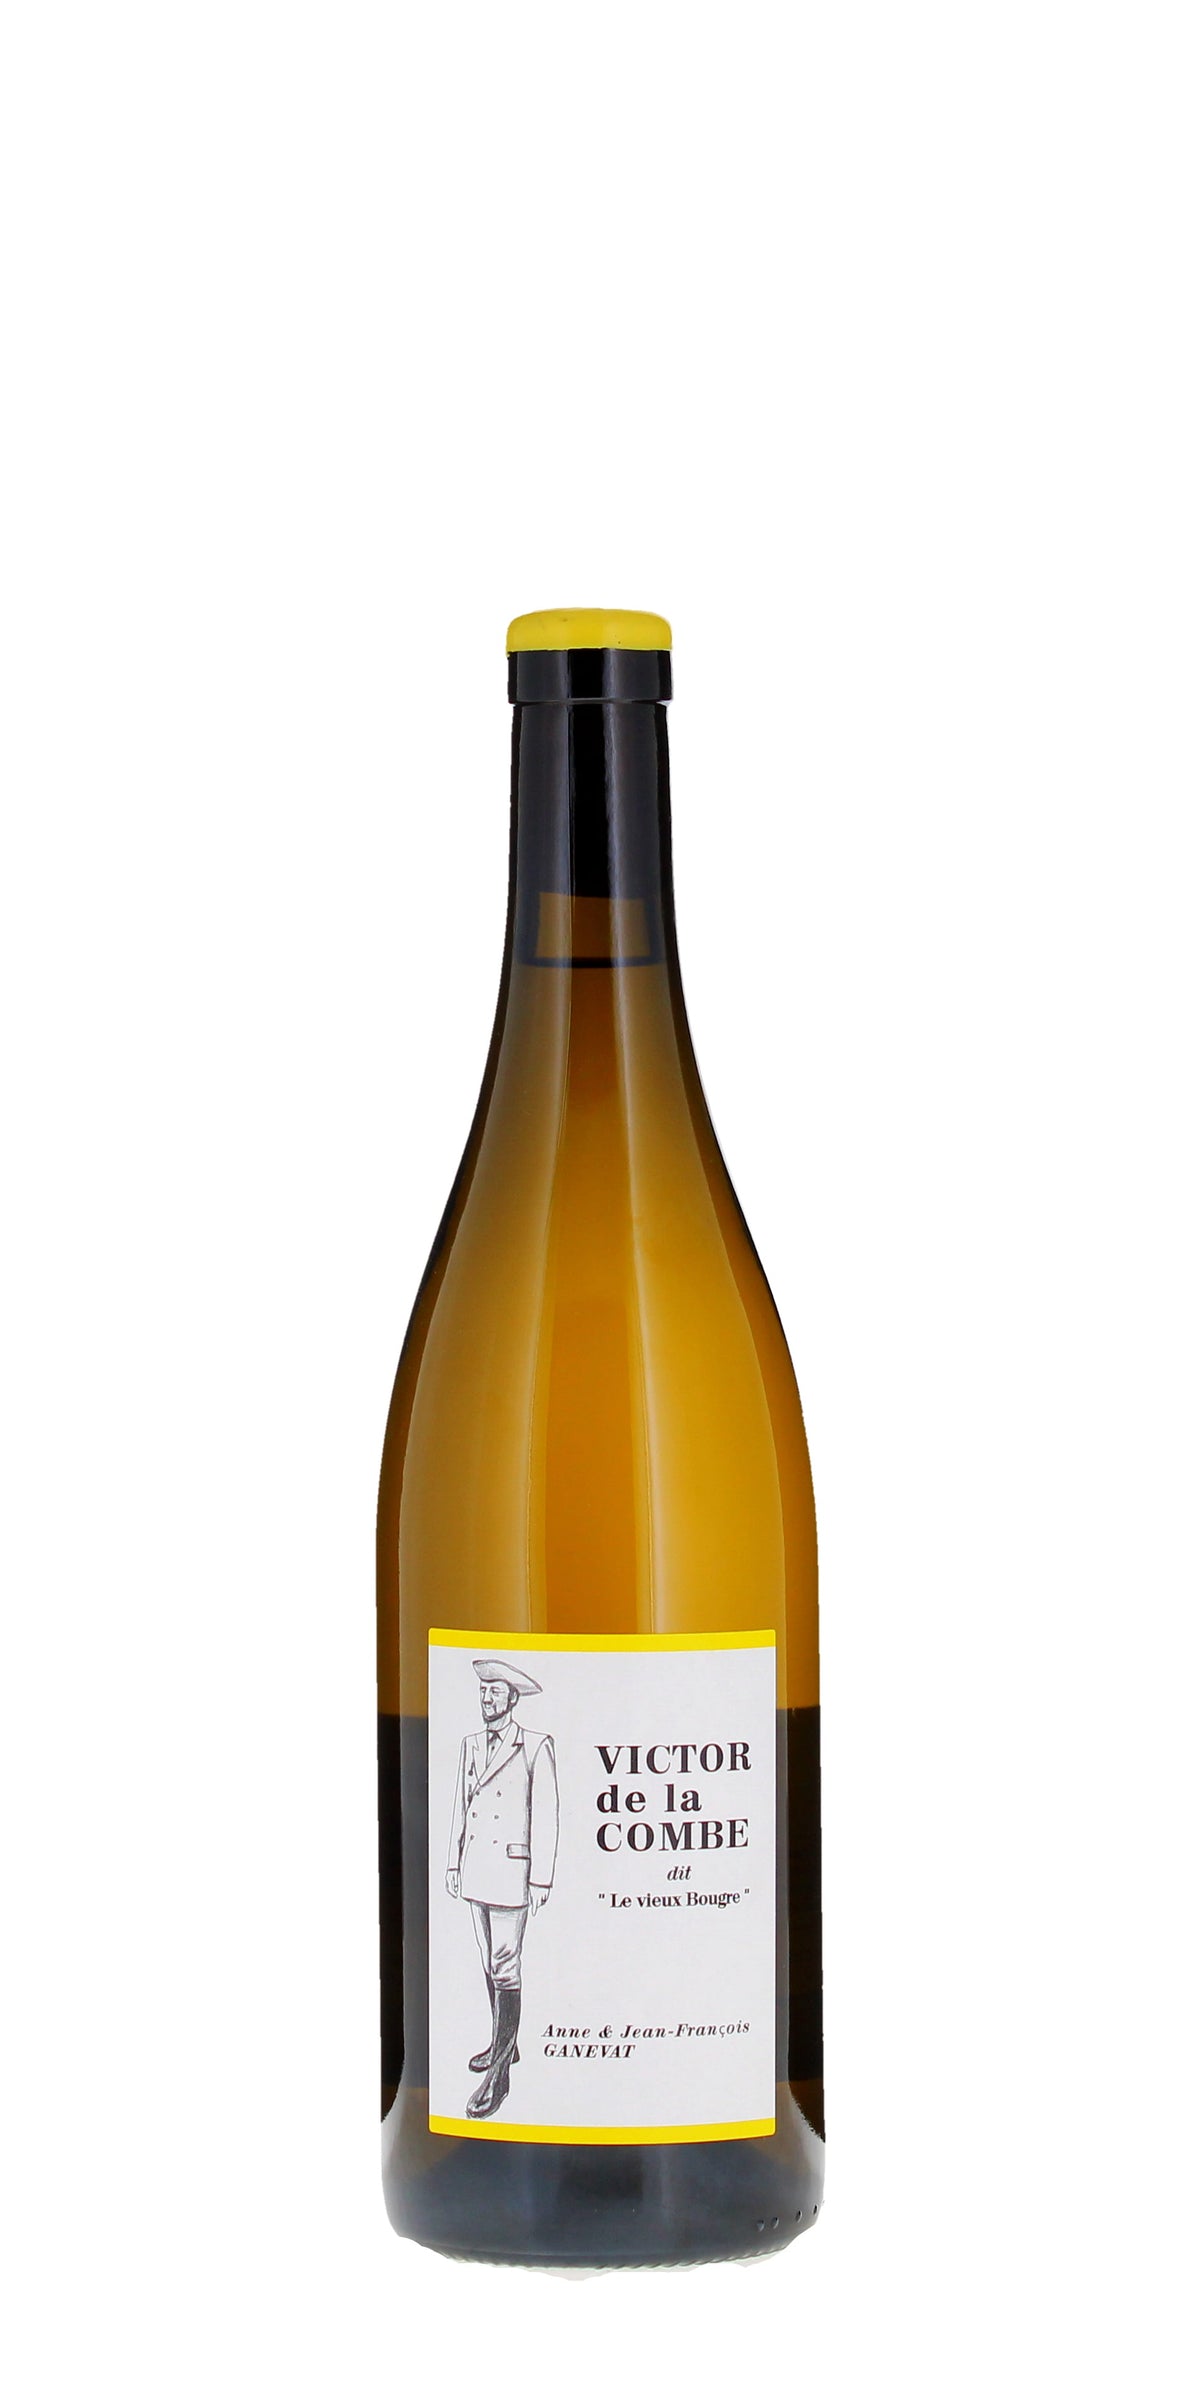 Anne et Jean-Francois Ganevat 'Victor de la Combe' dit Le Vieux Bougre, Vin de France NV